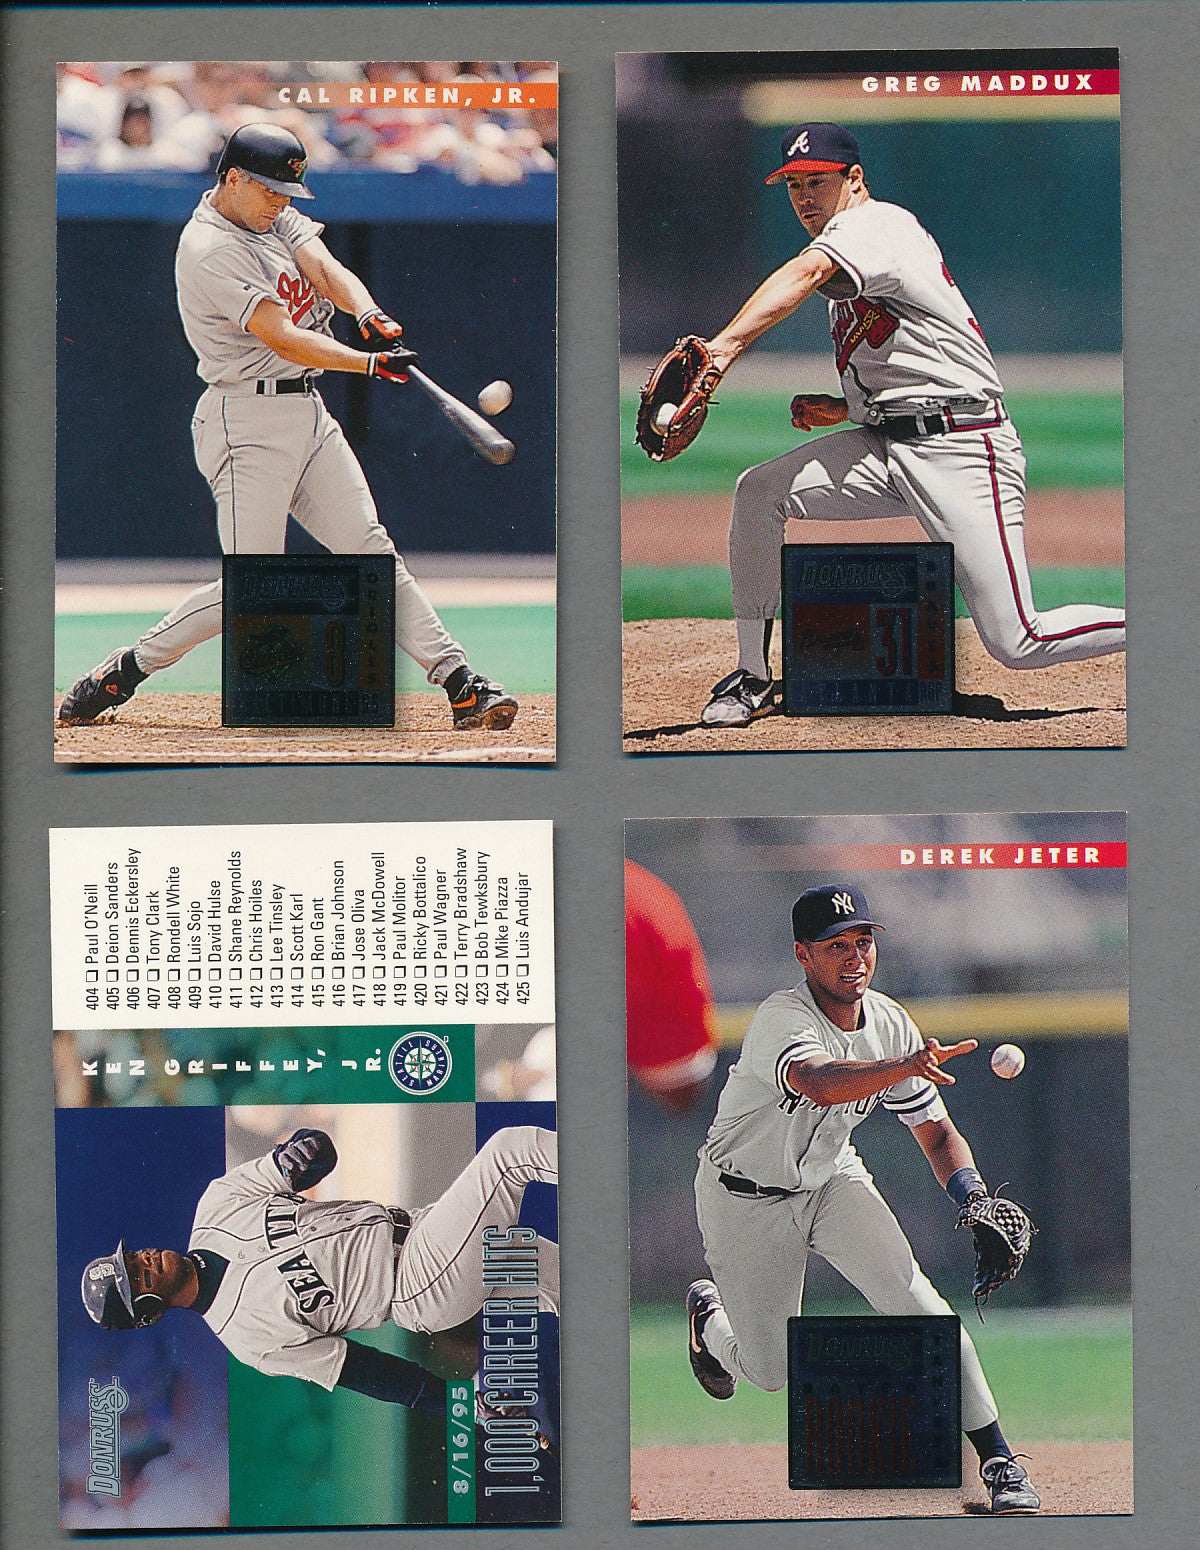 Paul O'neill 1996 Upper Deck Baseball Card 